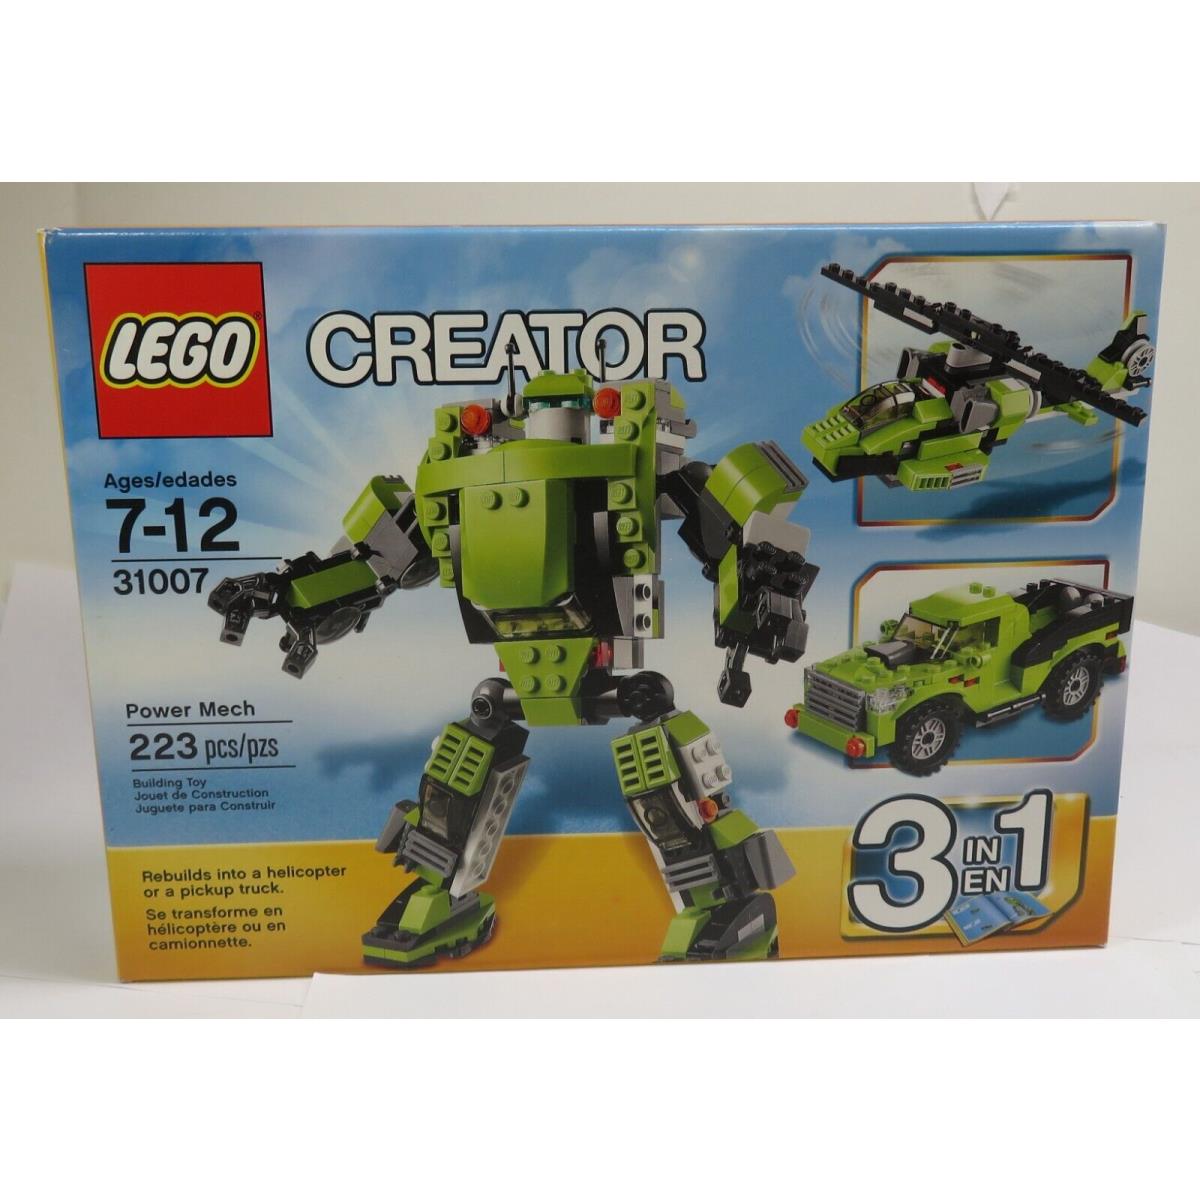 Lego Creator Power Mech - 31007 33386Y